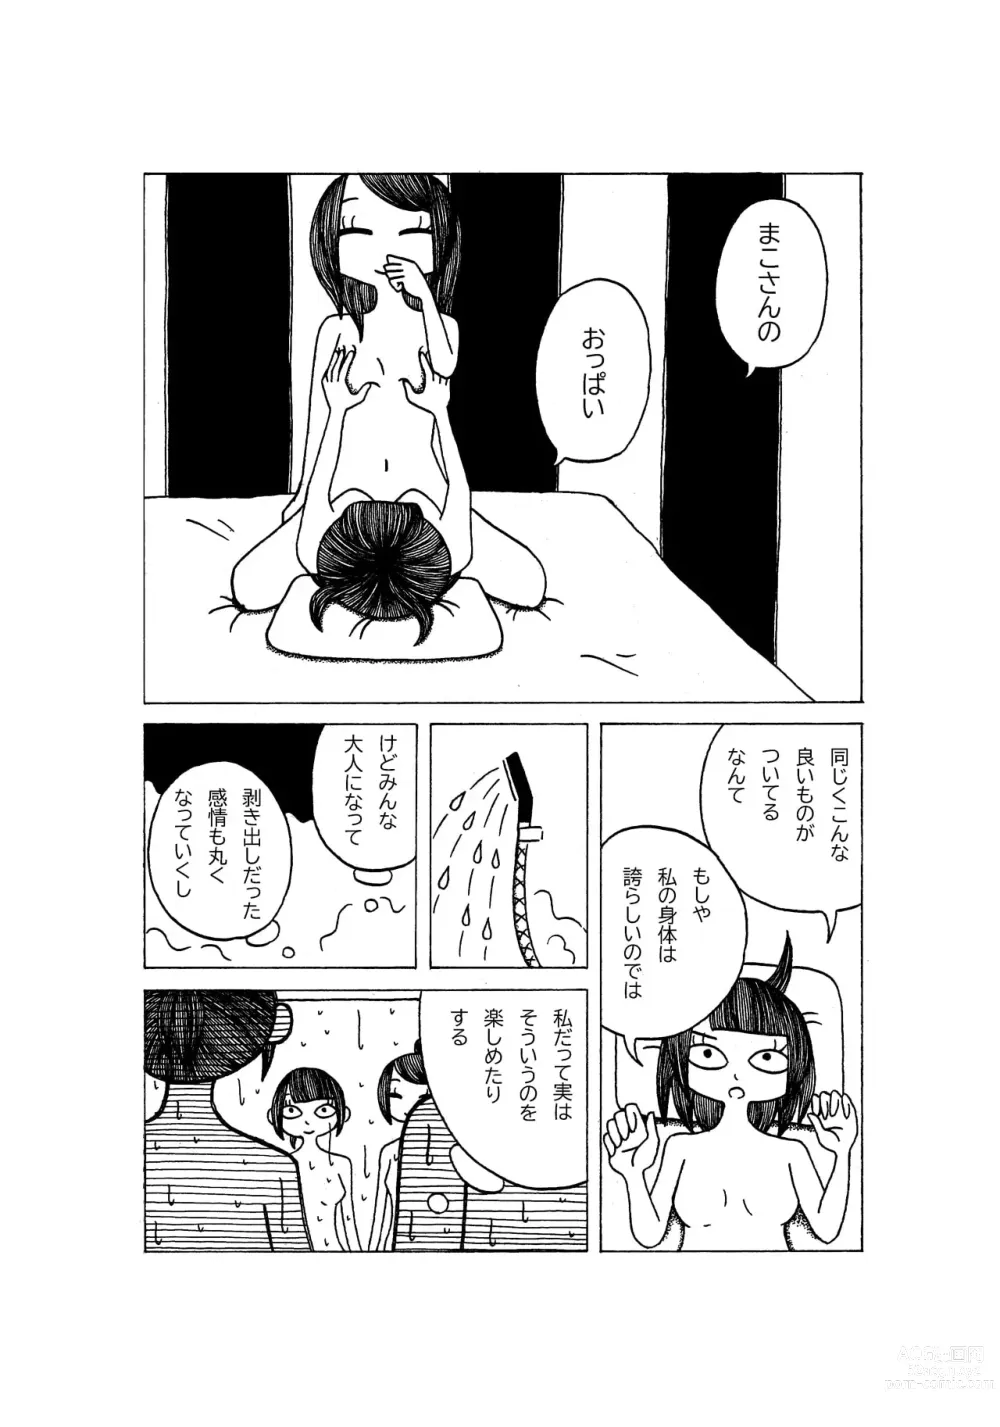 Page 9 of doujinshi Tokubetsuna Tanjoubi no Dekigoto.